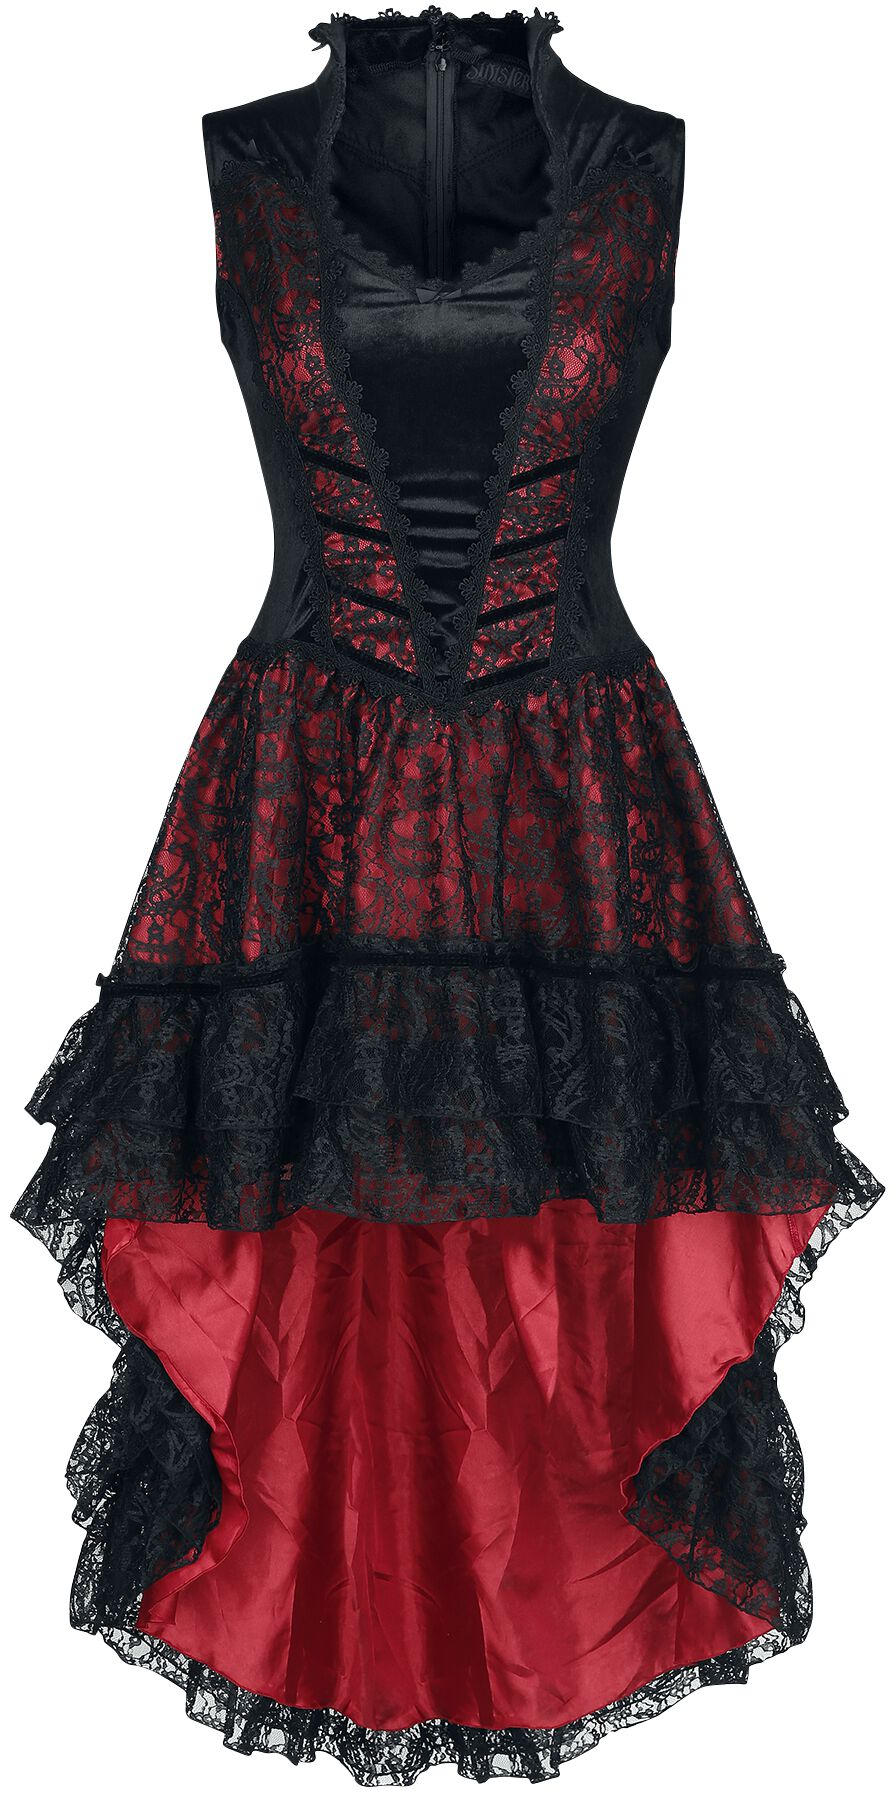 Sinister Gothic - Mittelalter Kleid knielang - Gothic Dress - XS bis 4XL - für Damen - Größe XL - schwarz/rot